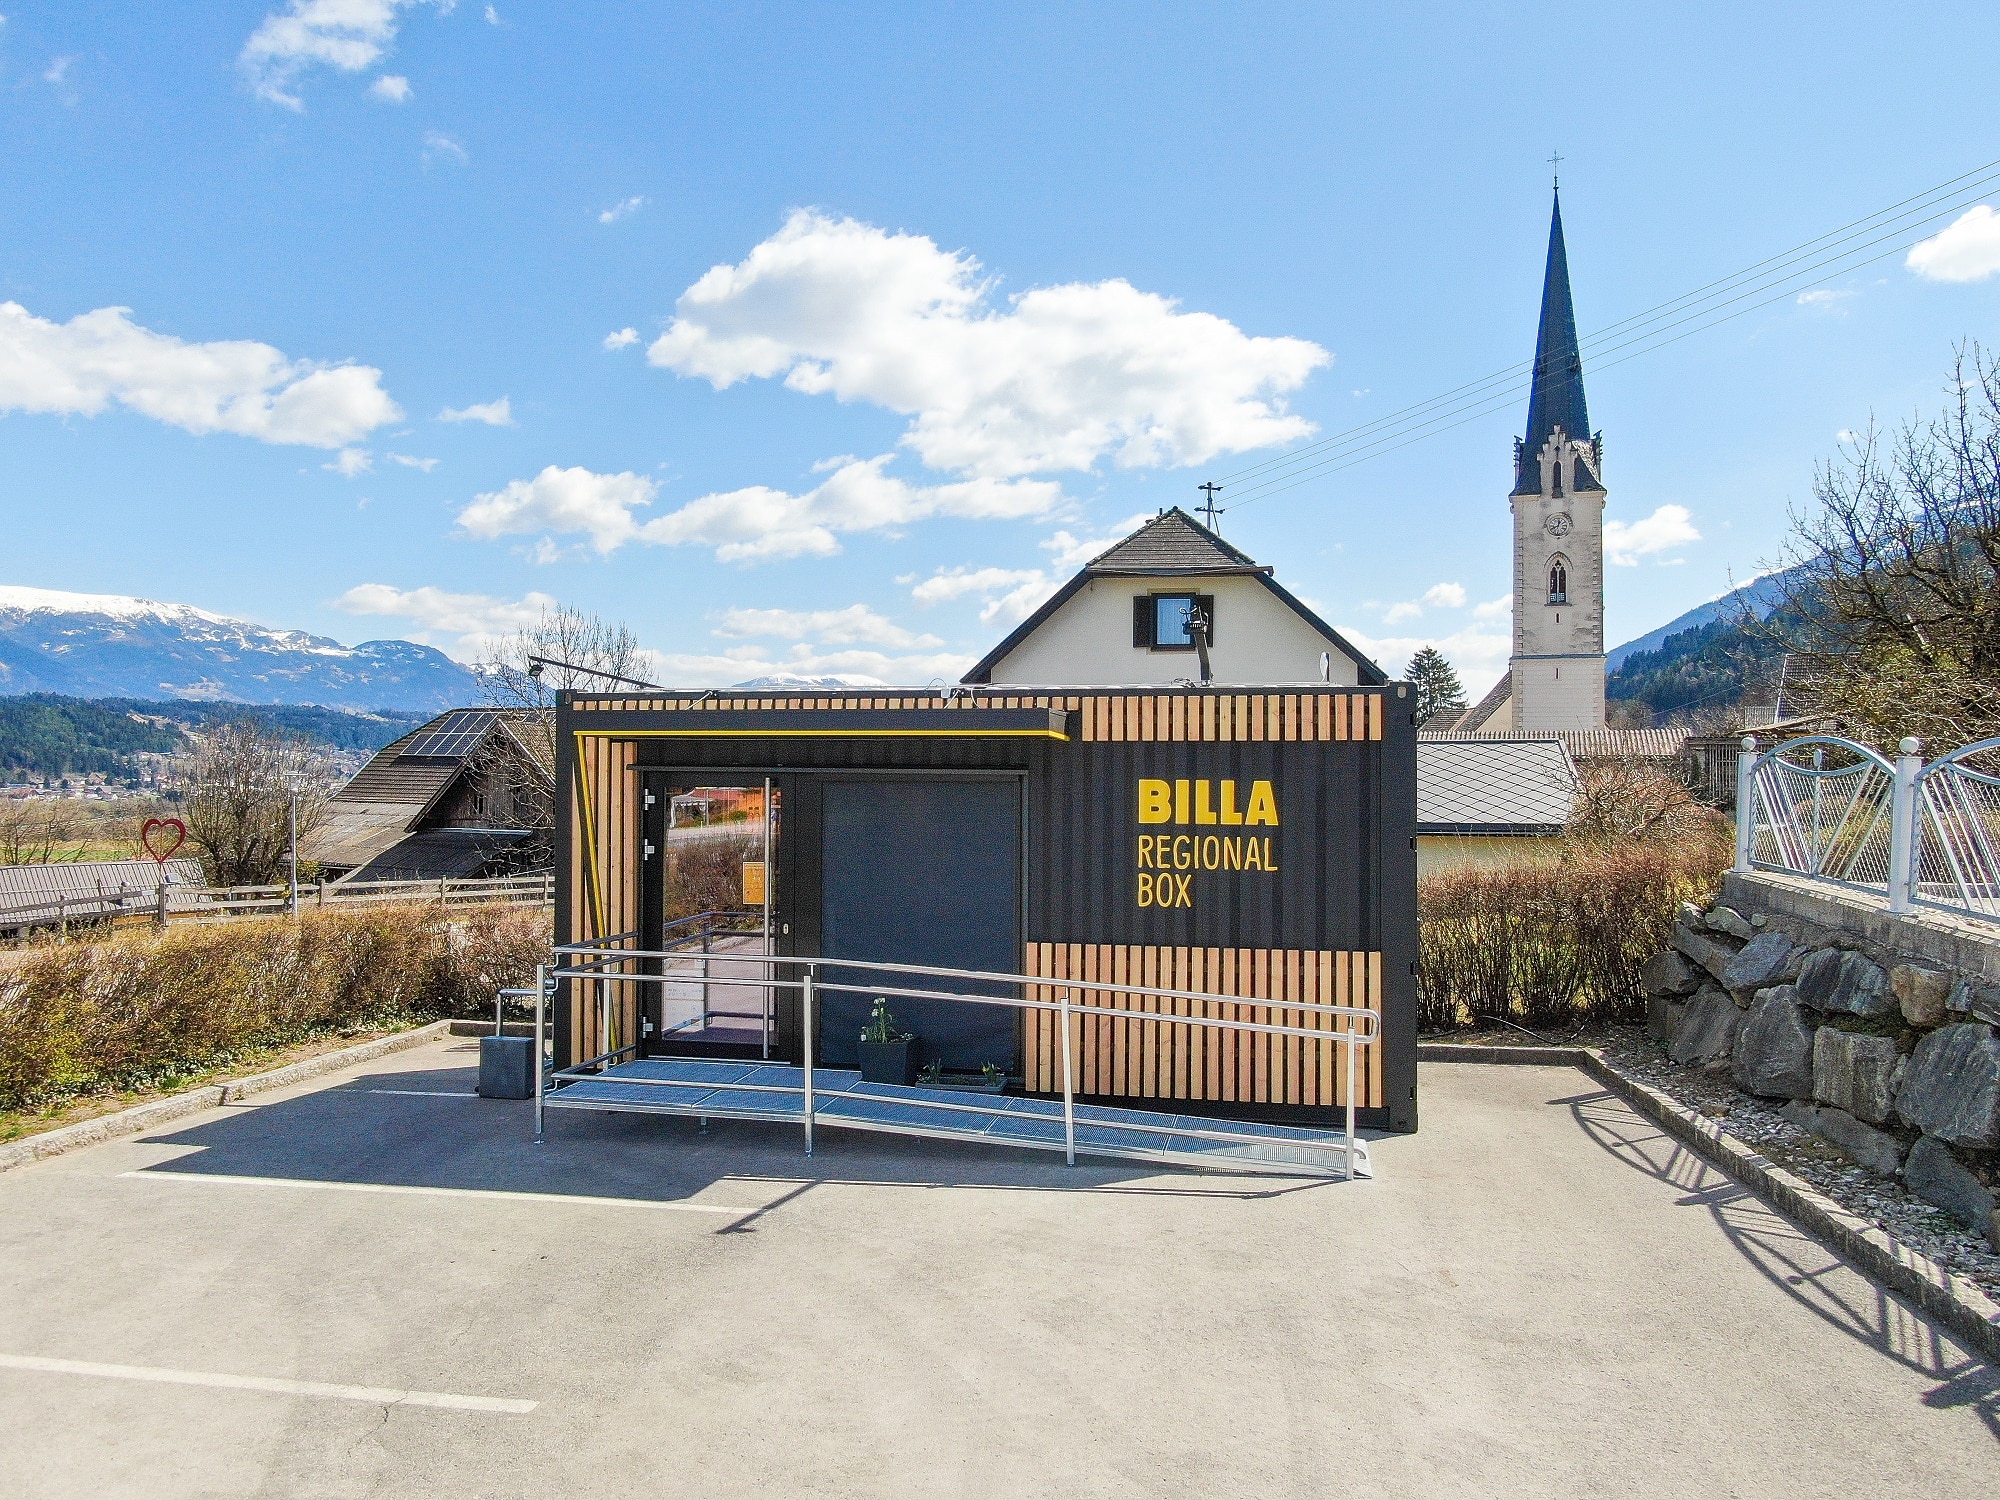 Die neue “Billa Regional Box” in Baldramsdorf